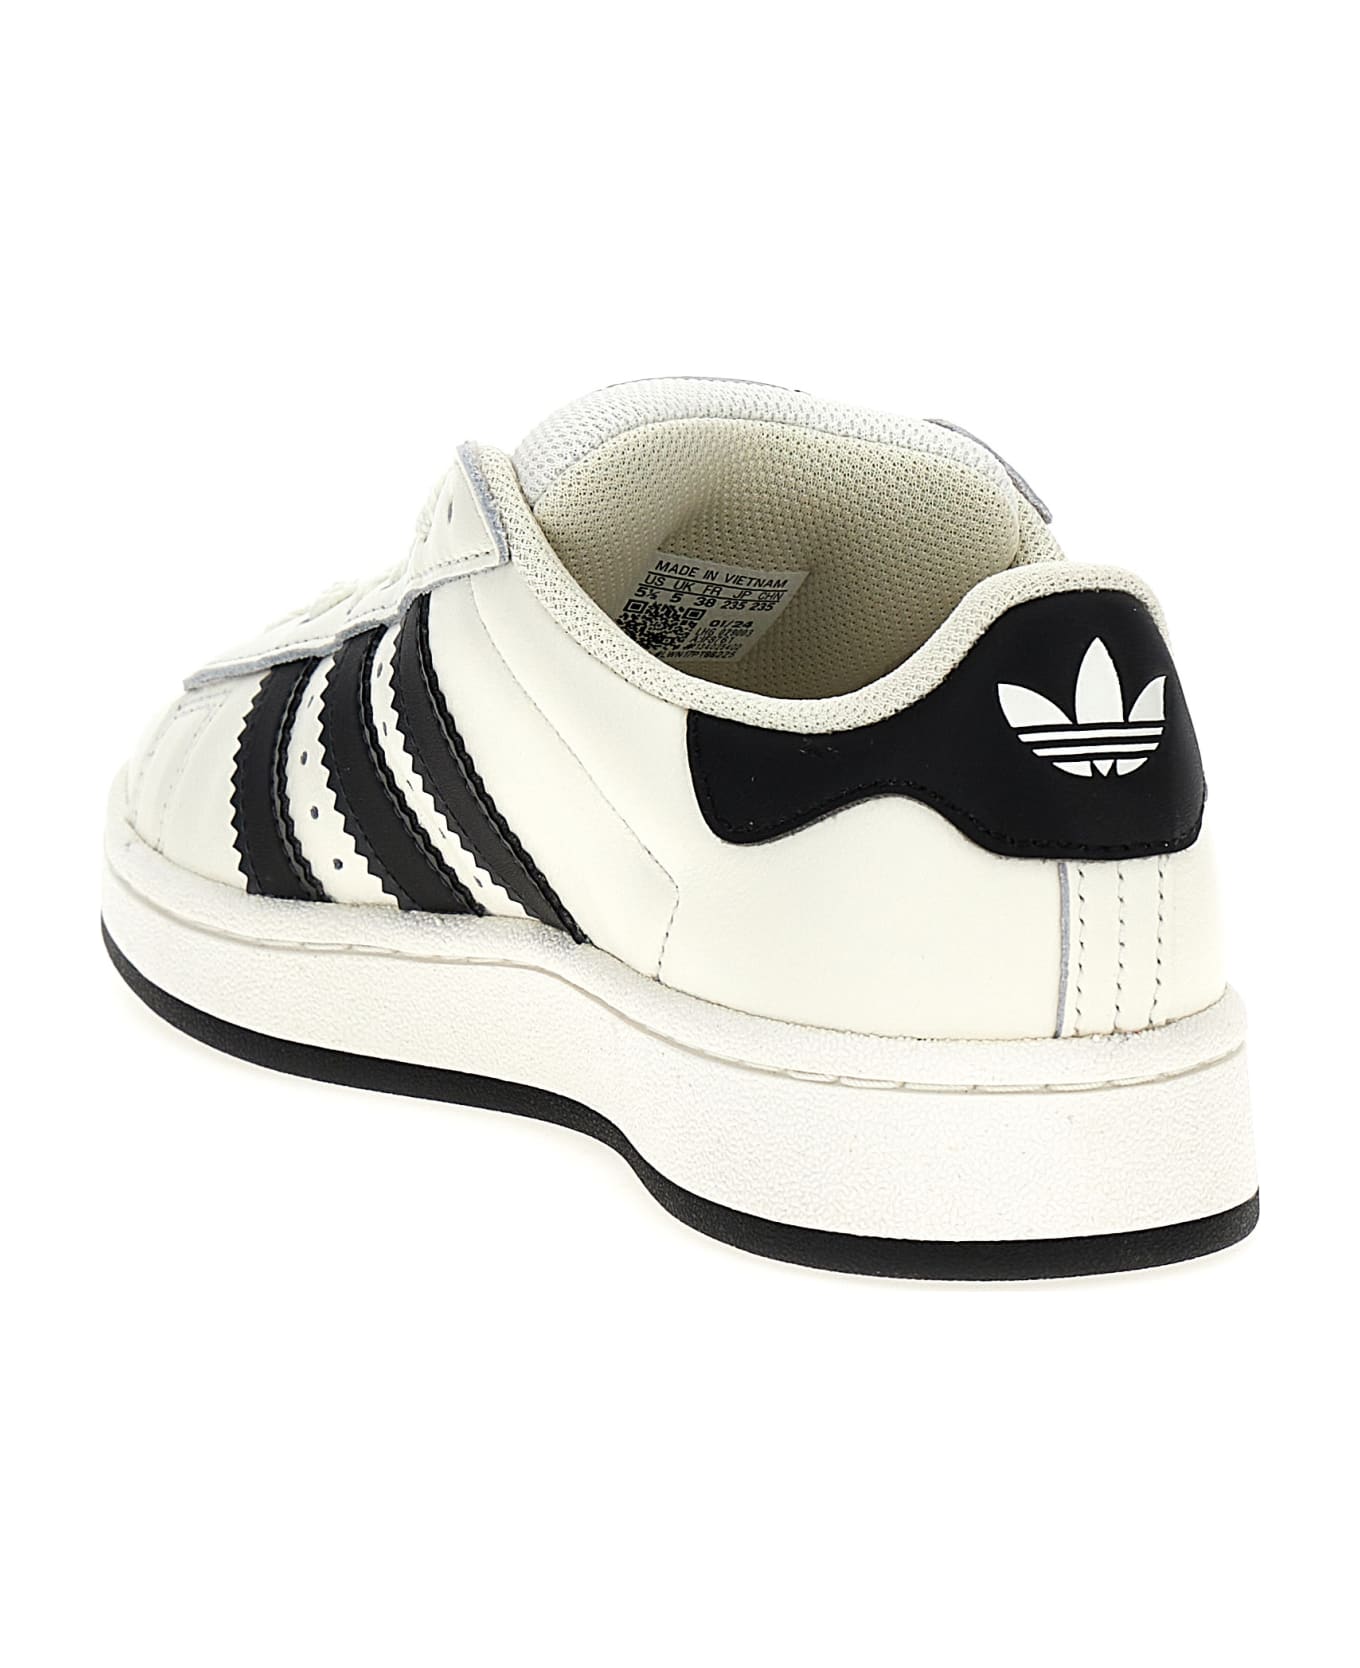 Adidas Originals 'campus 00s' Sneakers - White/Black スニーカー